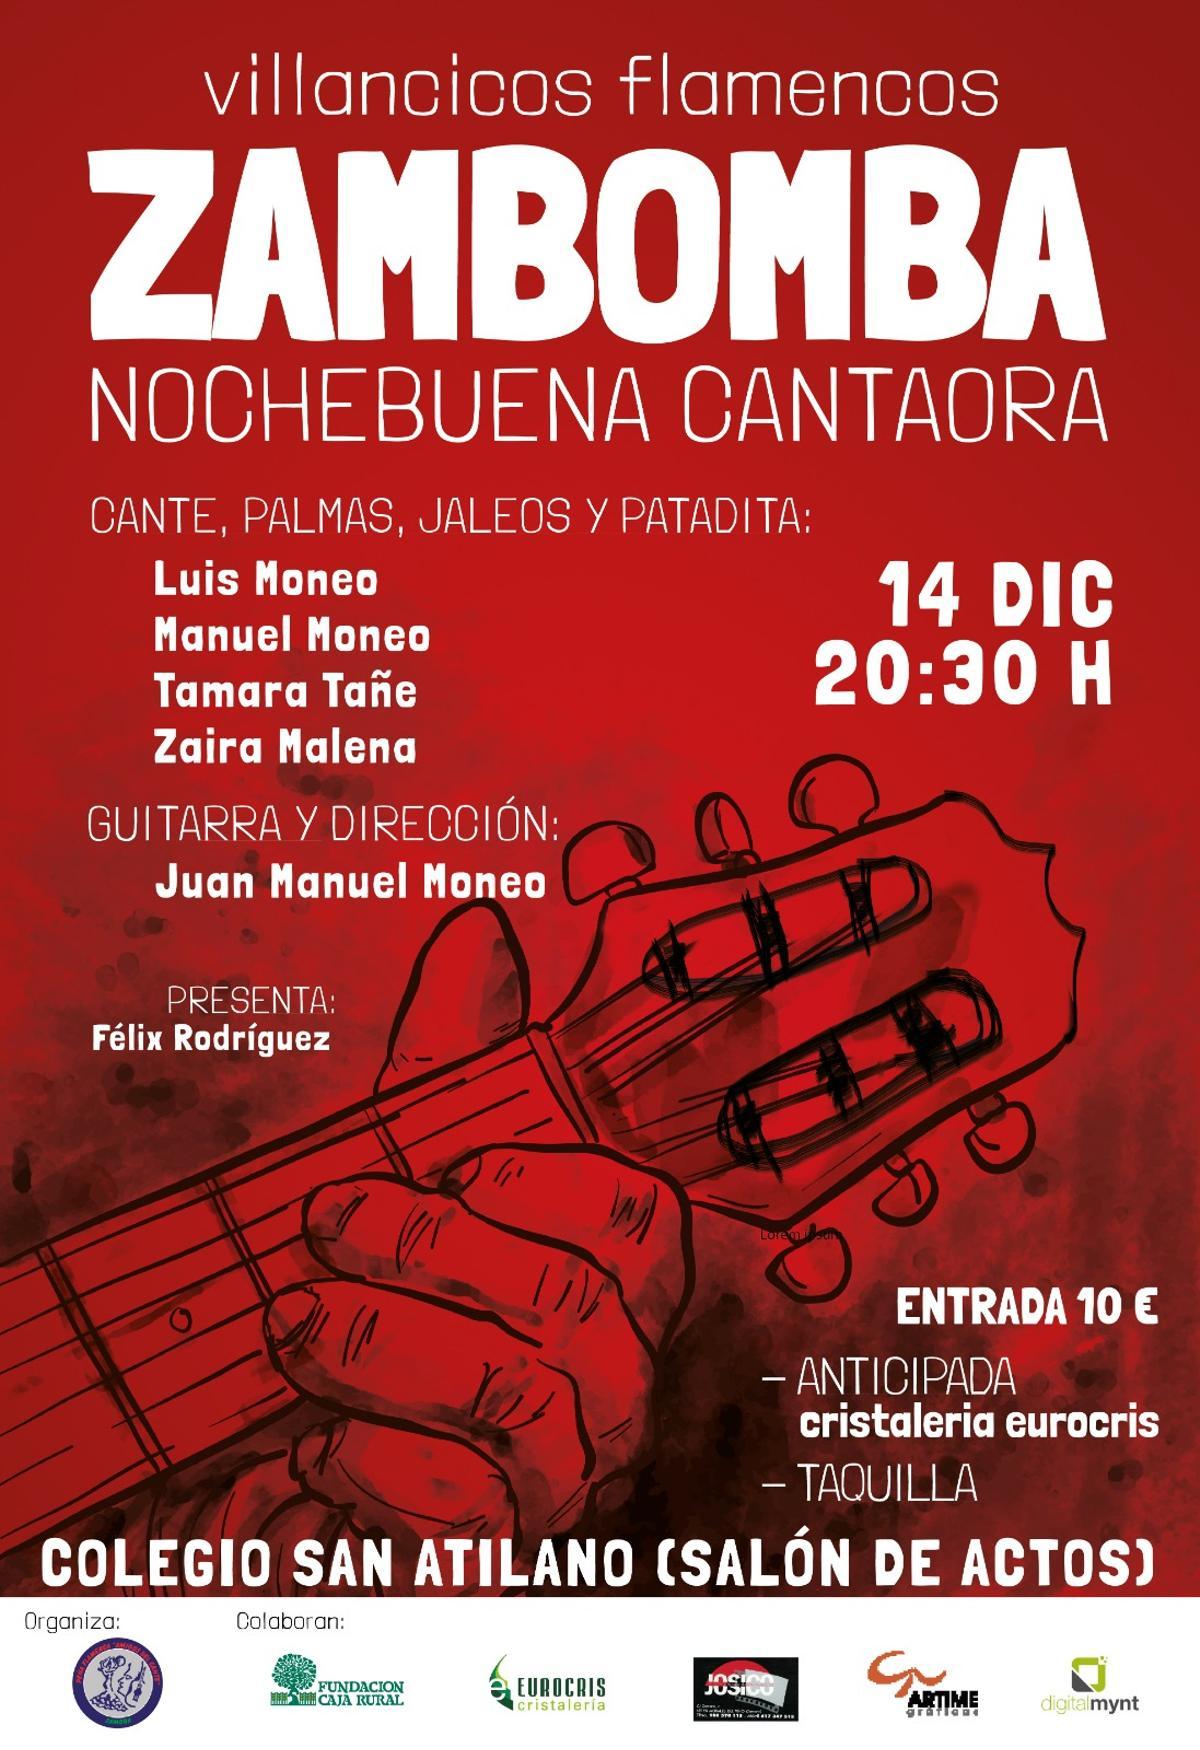 Cartel de la velada de villancicos flamencos